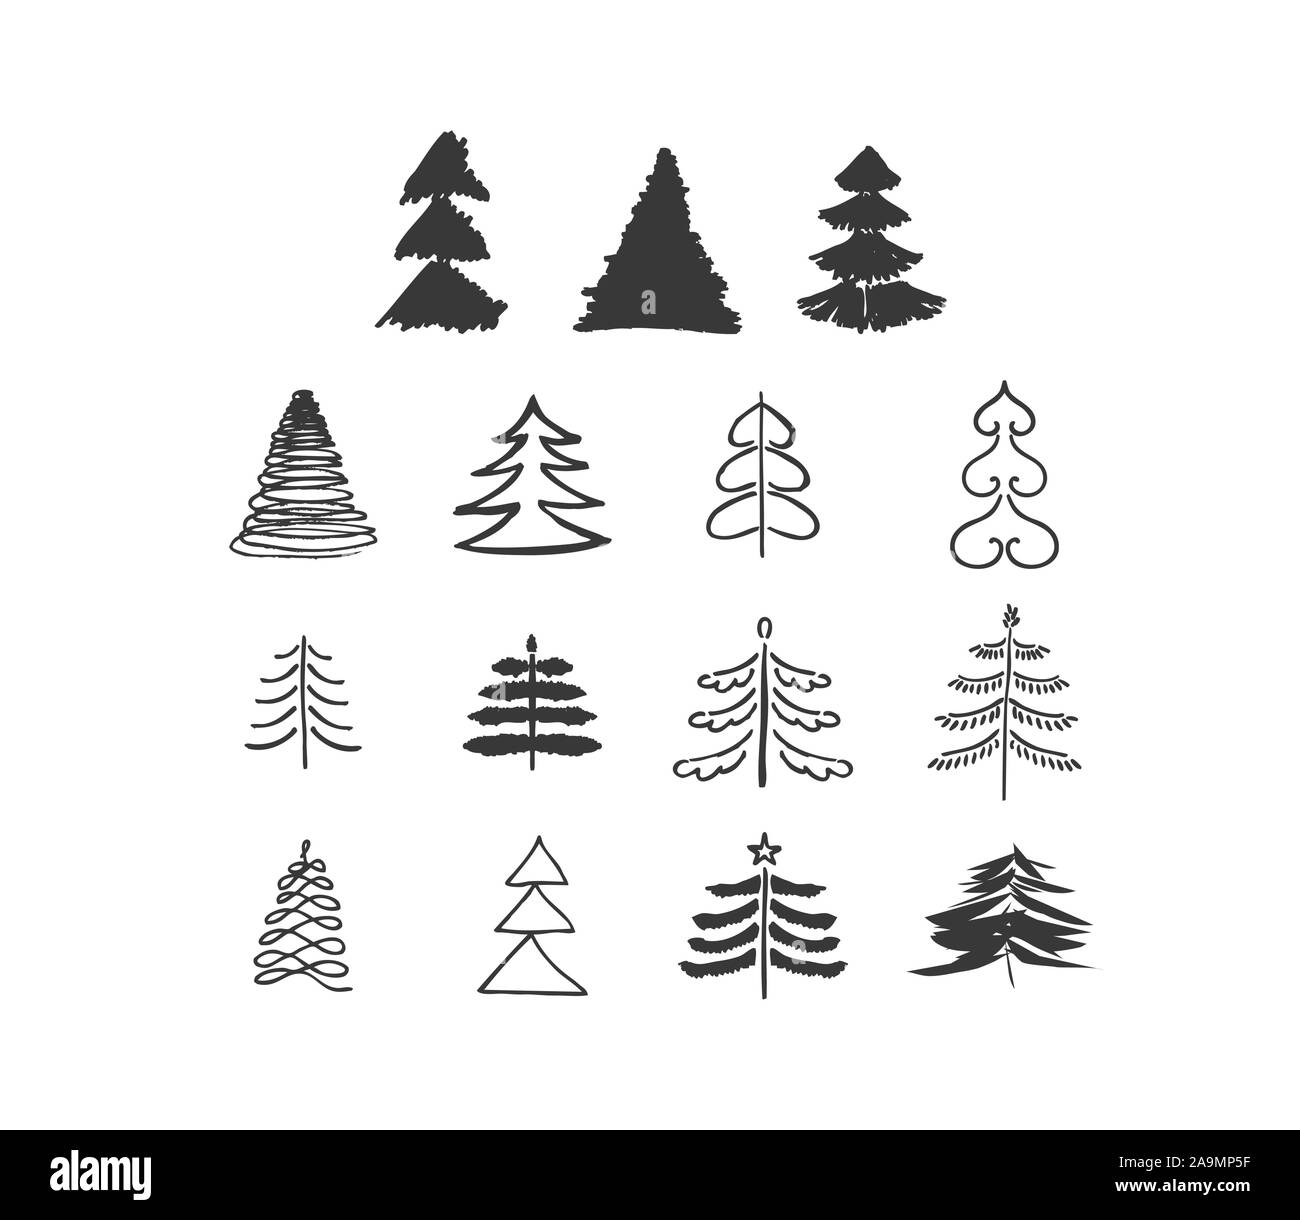 Satz von Hand gezeichnete Skizze doodle Vektor Weihnachtsbaum. Verschiedene  Formen von Weihnachtsbäumen. Kunst Bürste Stock-Vektorgrafik - Alamy